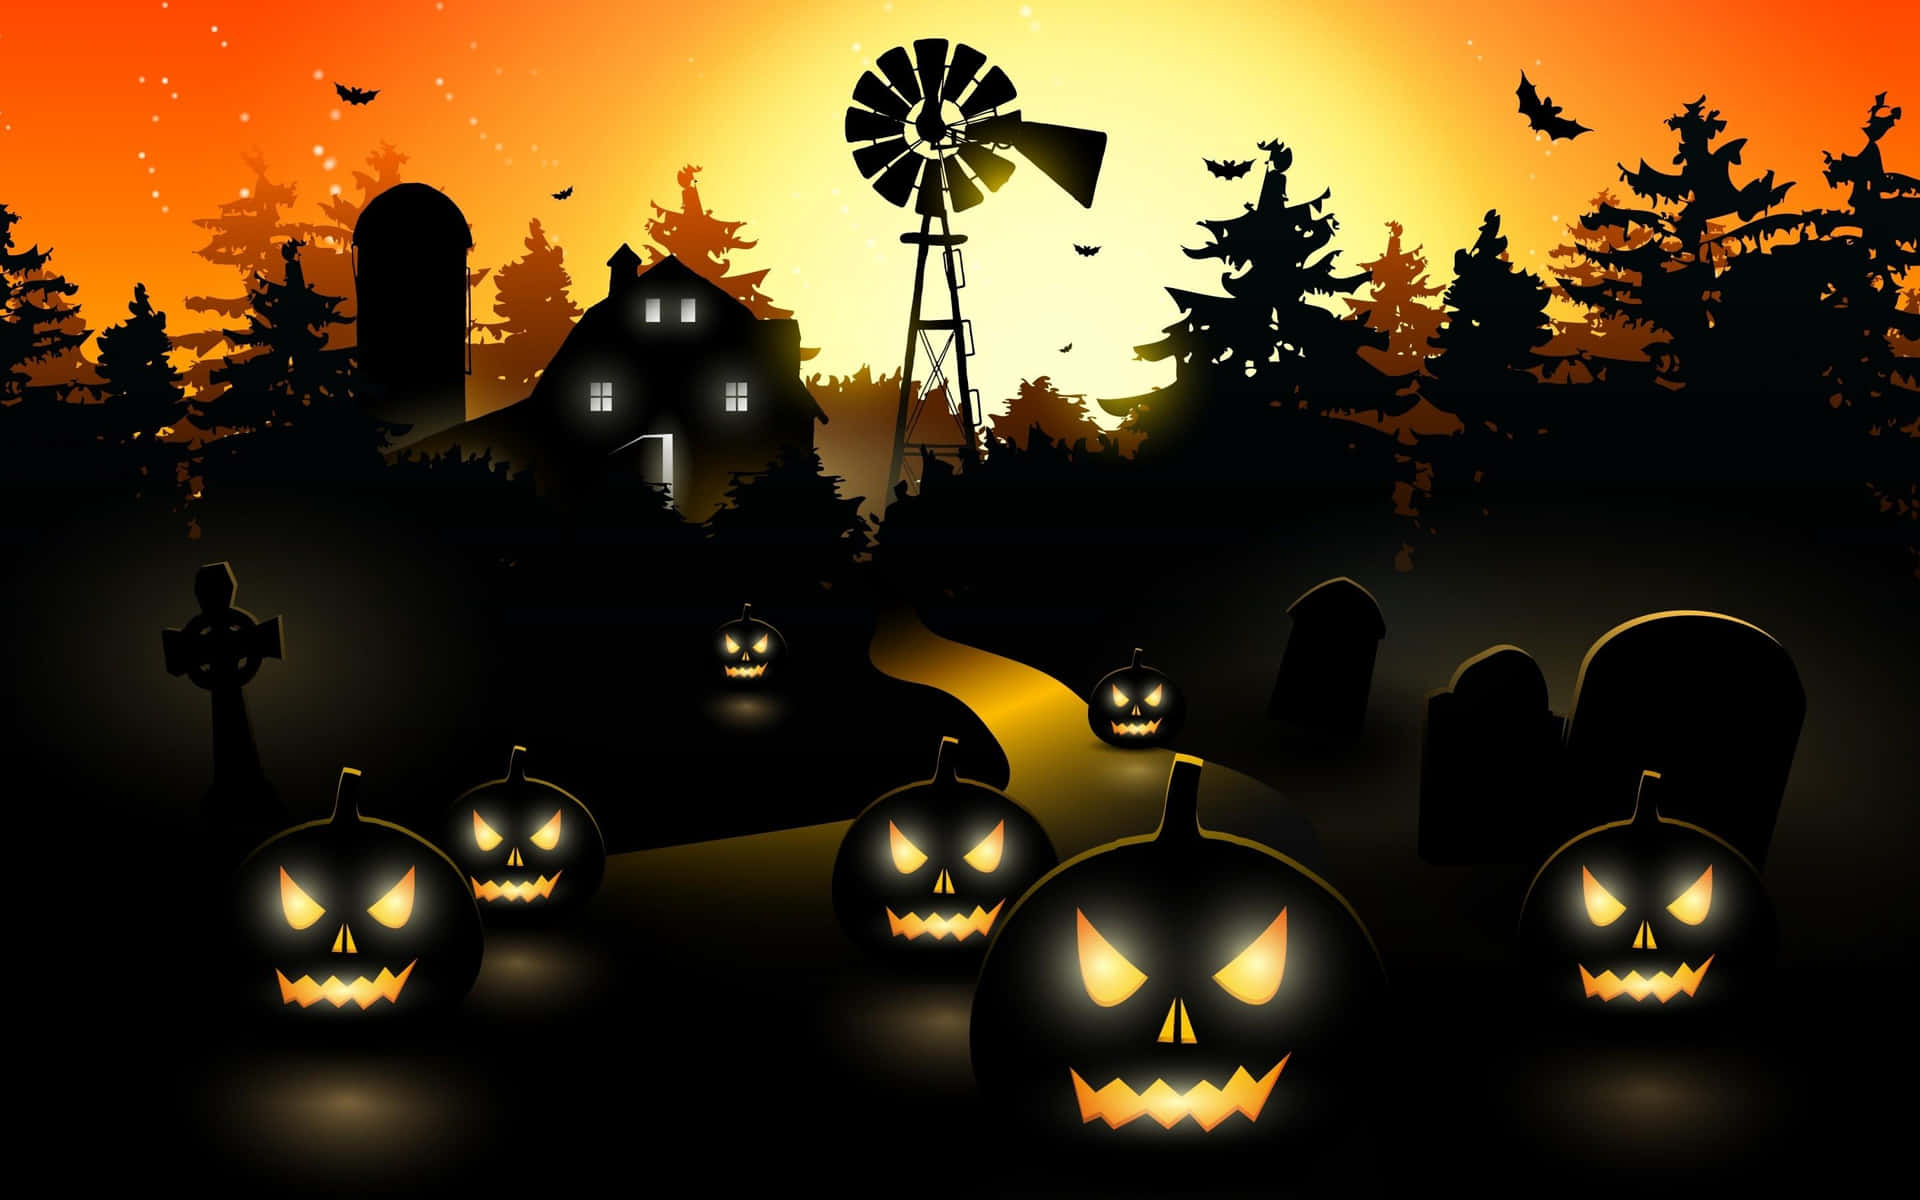 Espeluznantenoche De Halloween En 3d. Fondo de pantalla